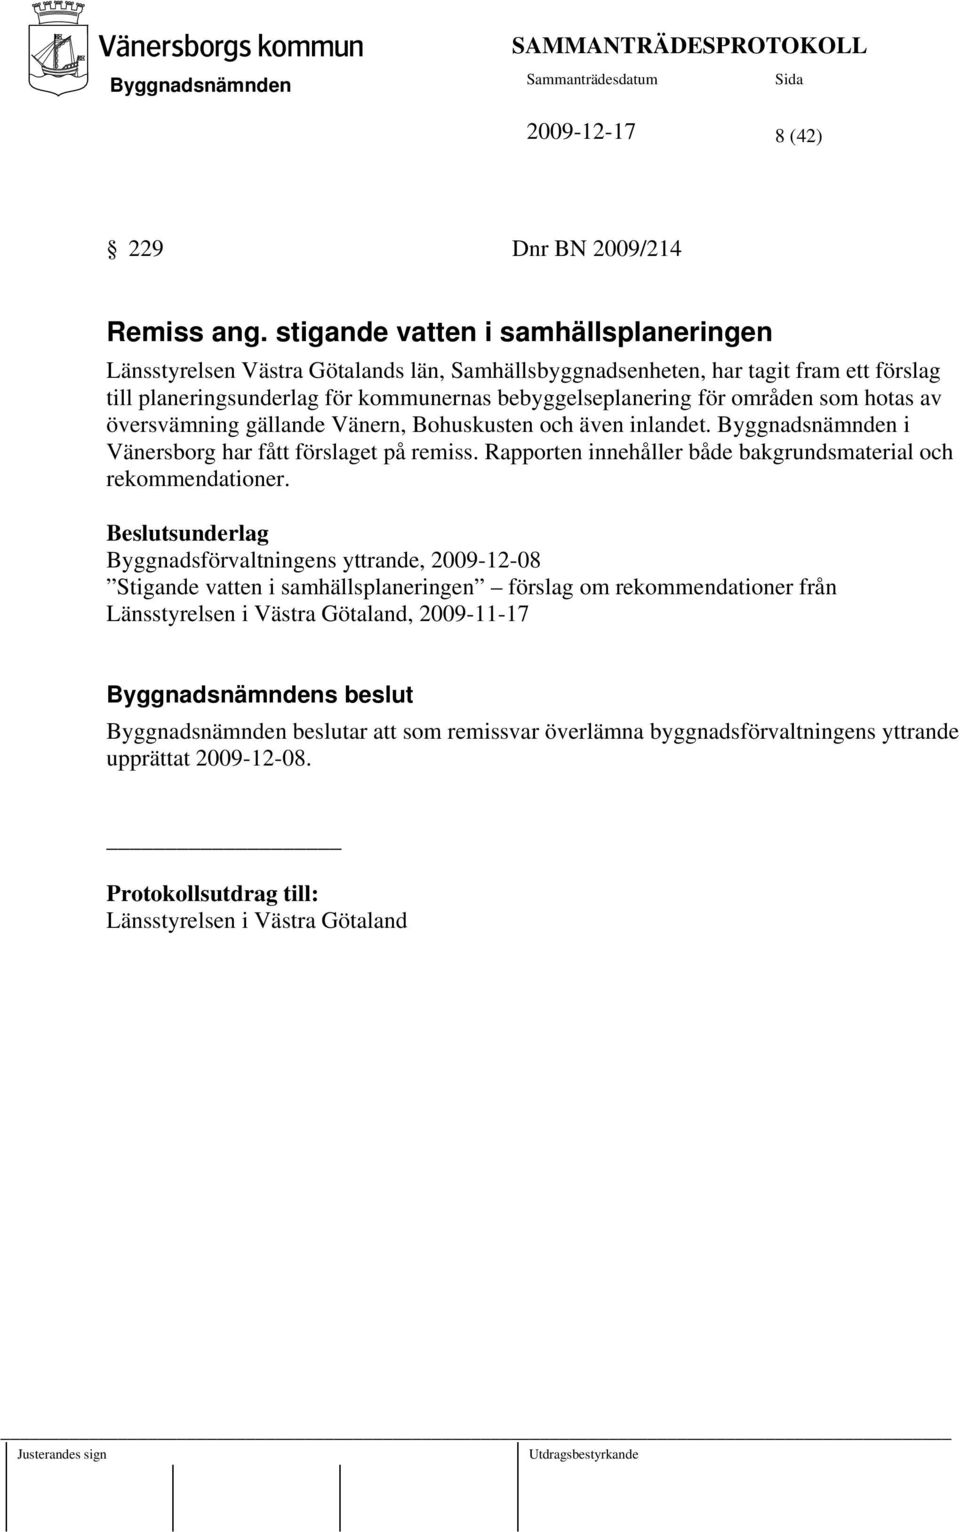 områden som hotas av översvämning gällande Vänern, Bohuskusten och även inlandet. i Vänersborg har fått förslaget på remiss. Rapporten innehåller både bakgrundsmaterial och rekommendationer.